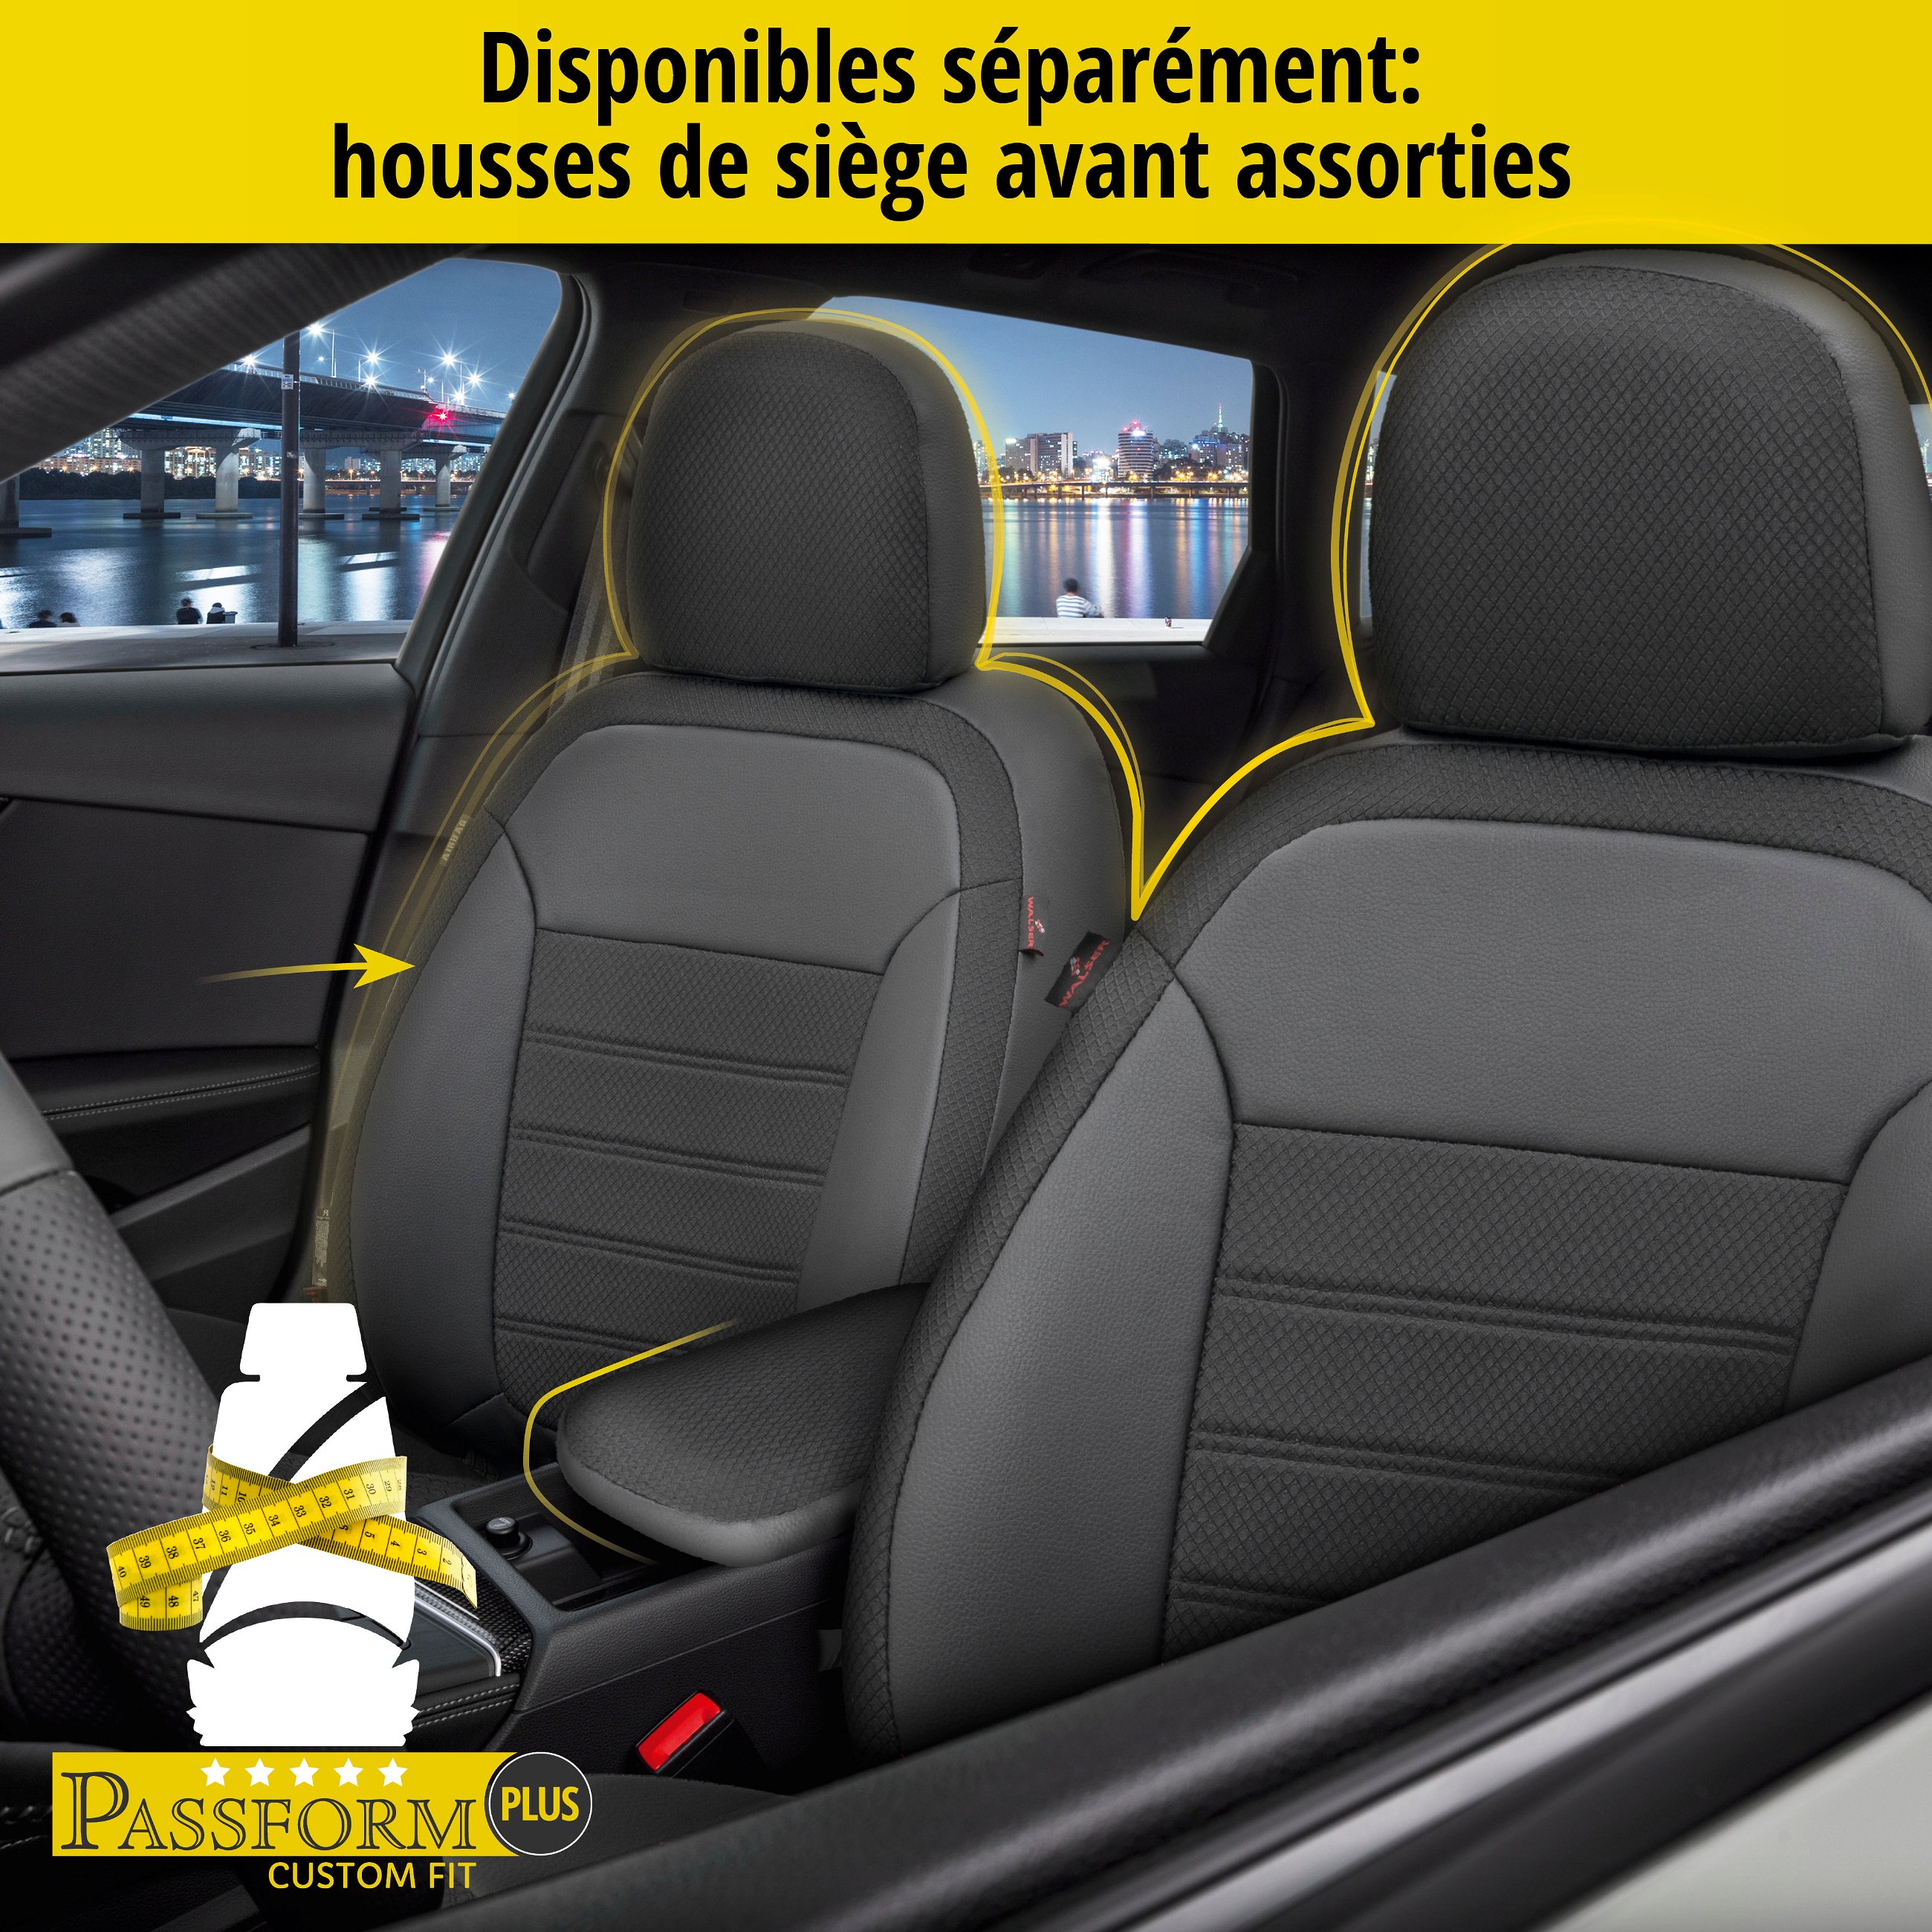 Housse de siège Aversa pour VW Passat Variant (365) 08/2010-12/2015, 1 housse de siège arrière pour les sièges normaux